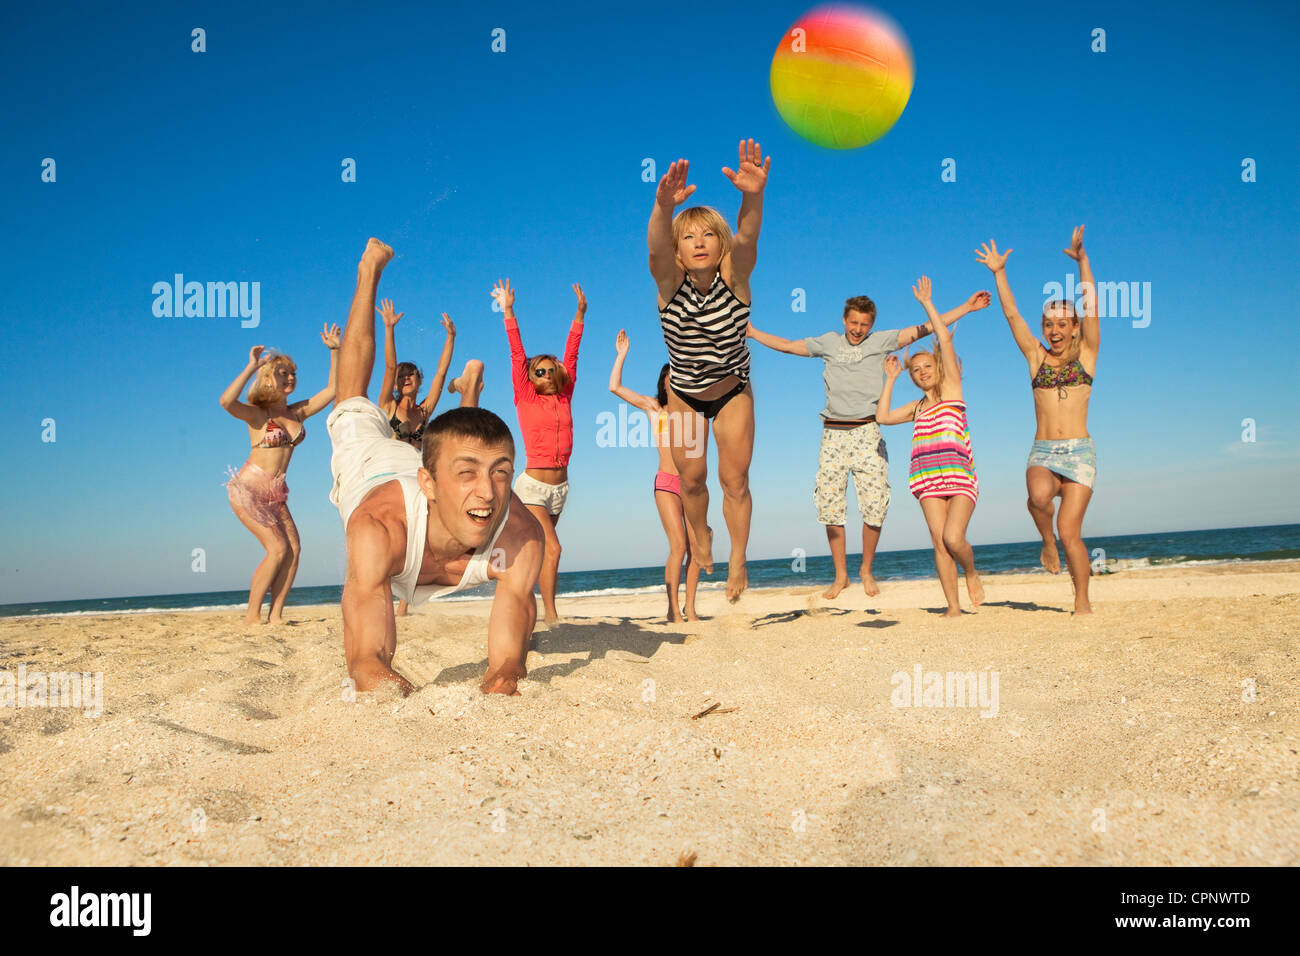 Grupo de jóvenes alegres juega al voleibol en la playa Foto de stock